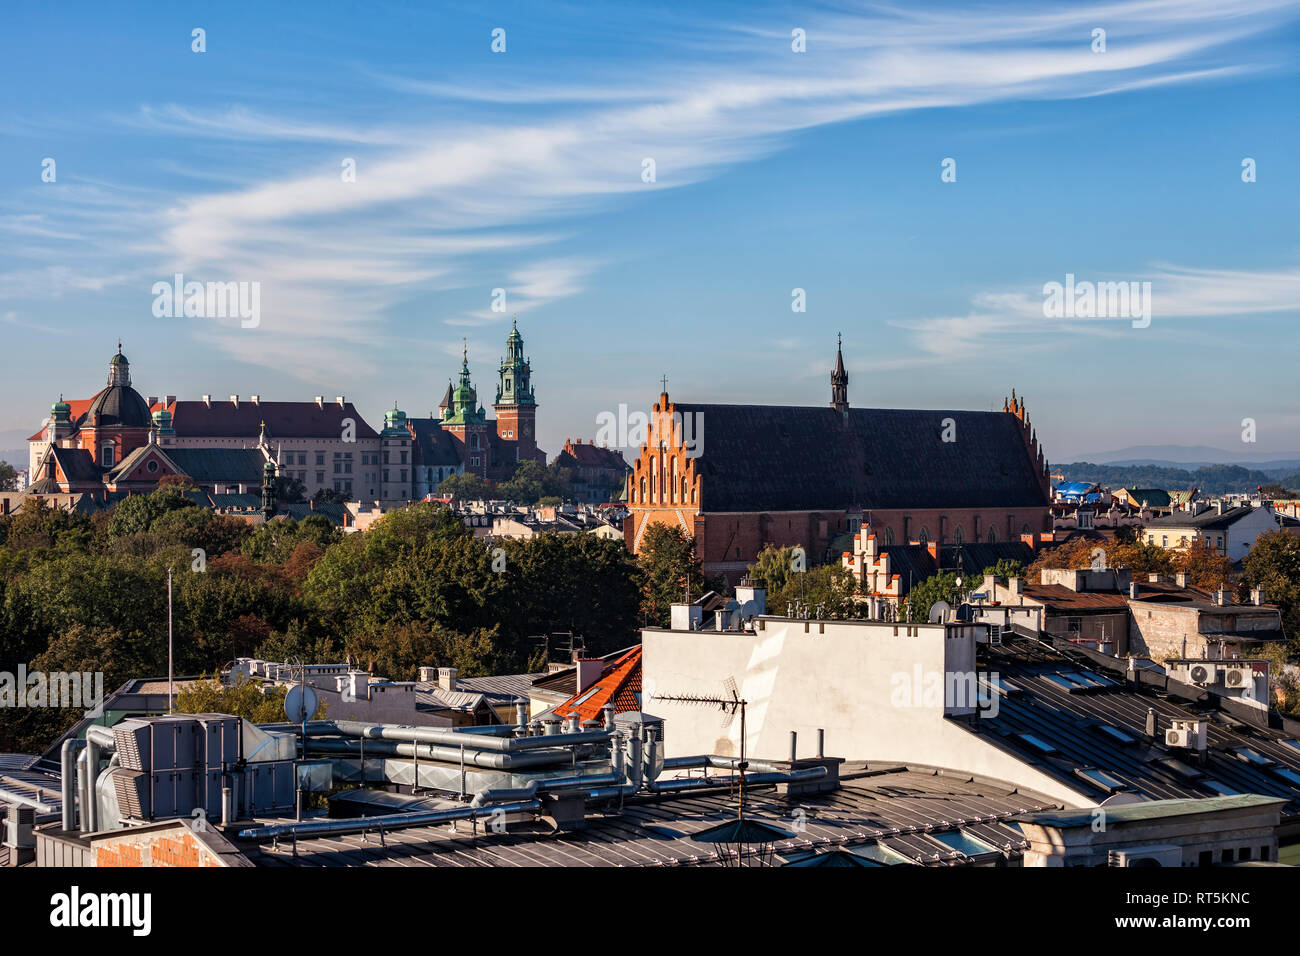 Polen, Krakau, historische Stadtzentrum Stadtbild mit Schloss Wawel und Heilige Dreifaltigkeit Kirche Stockfoto